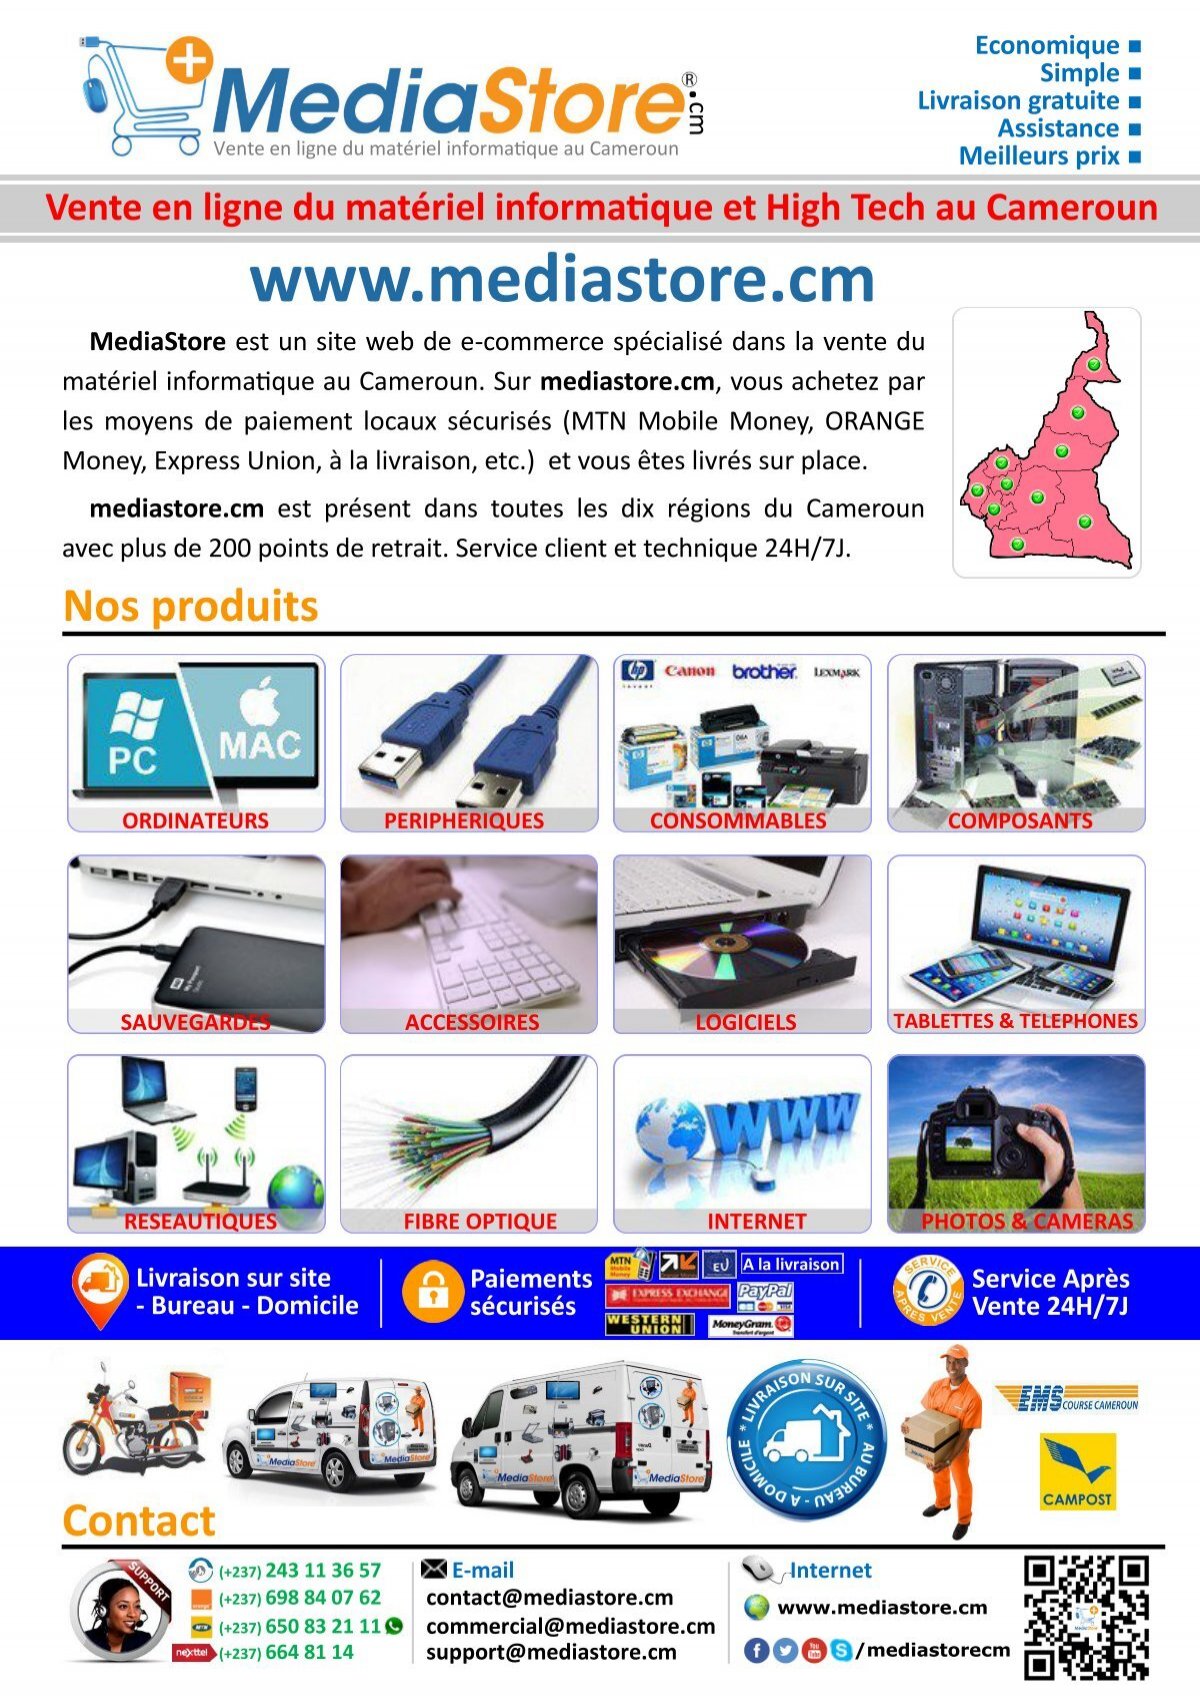 Accessoires - MediaStore